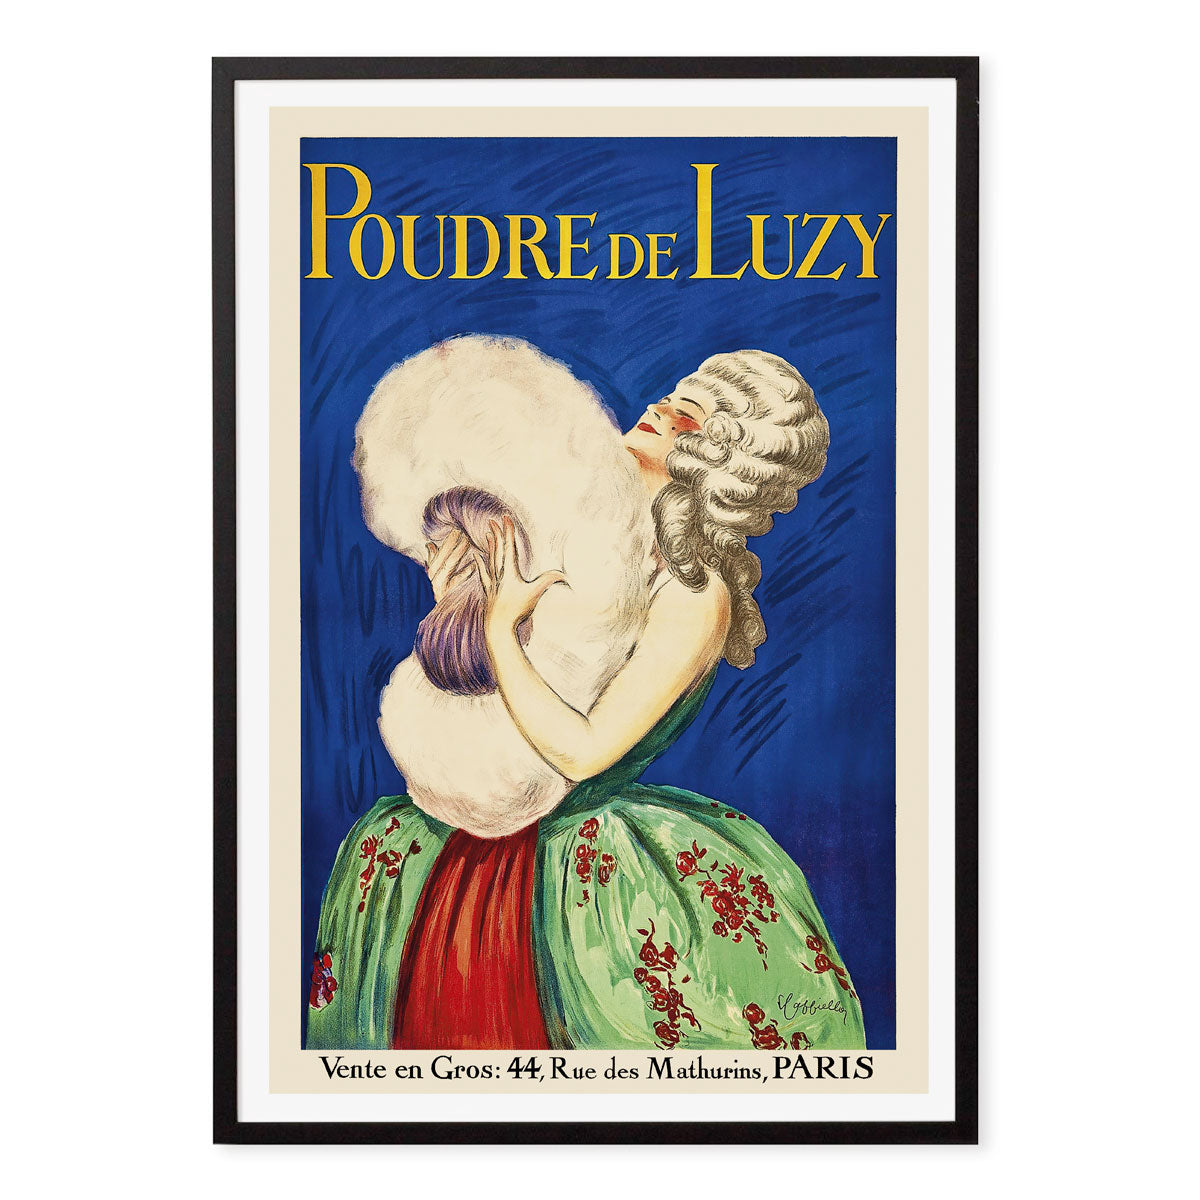 Poudre de Luzy paris vintage retro poster print in black frame from Places We Luv